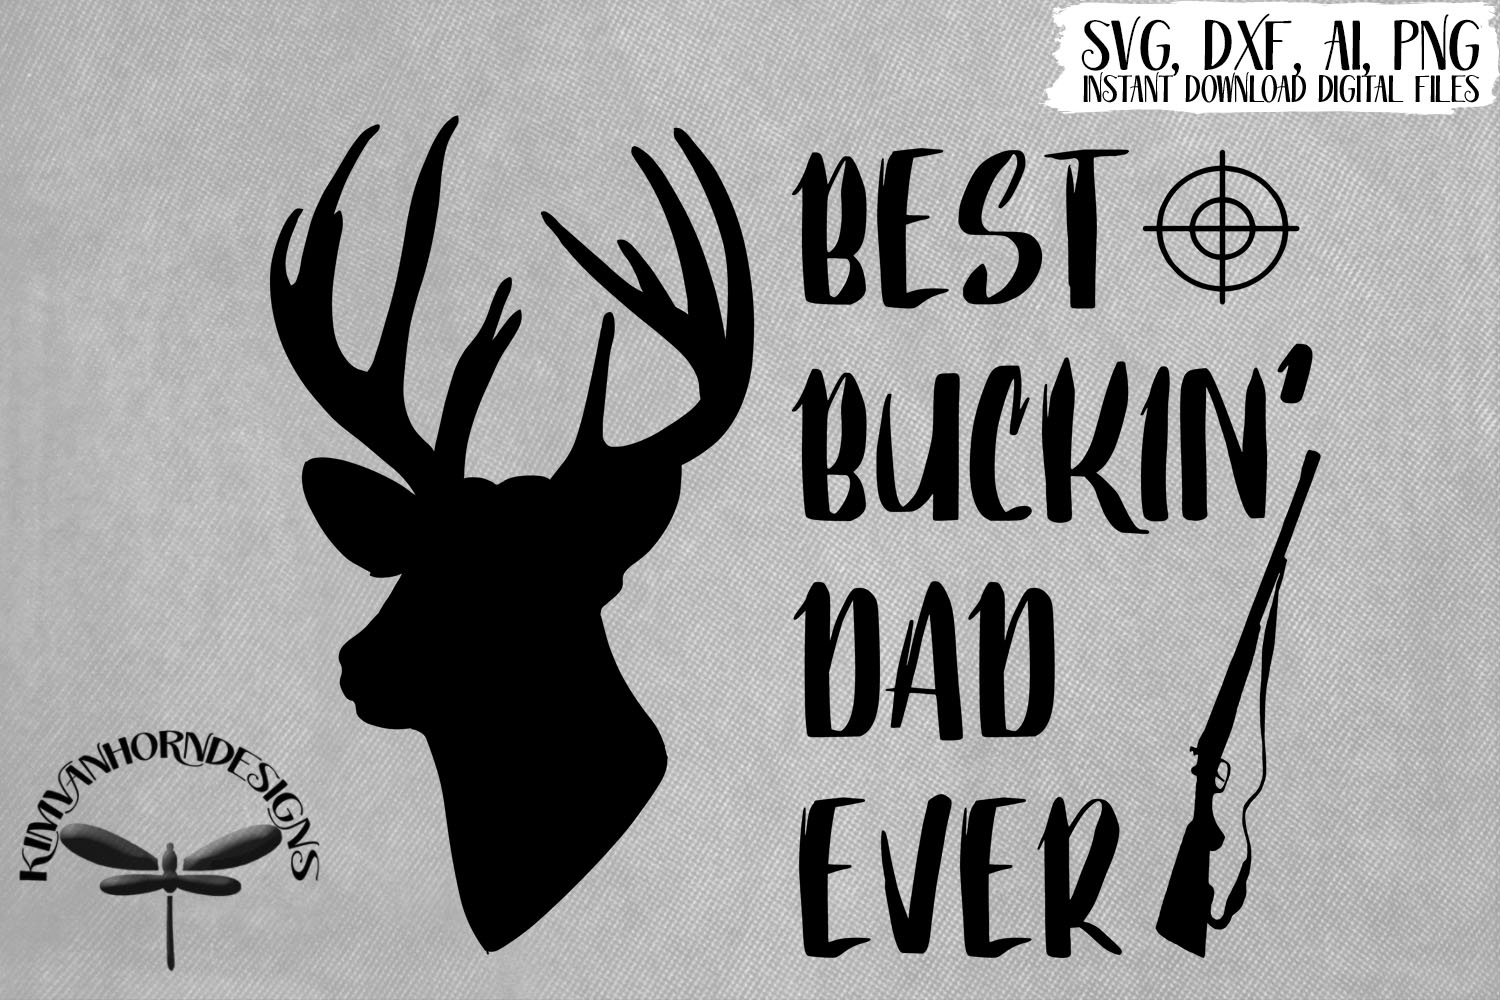 Download Best Buckin' Dad Ever